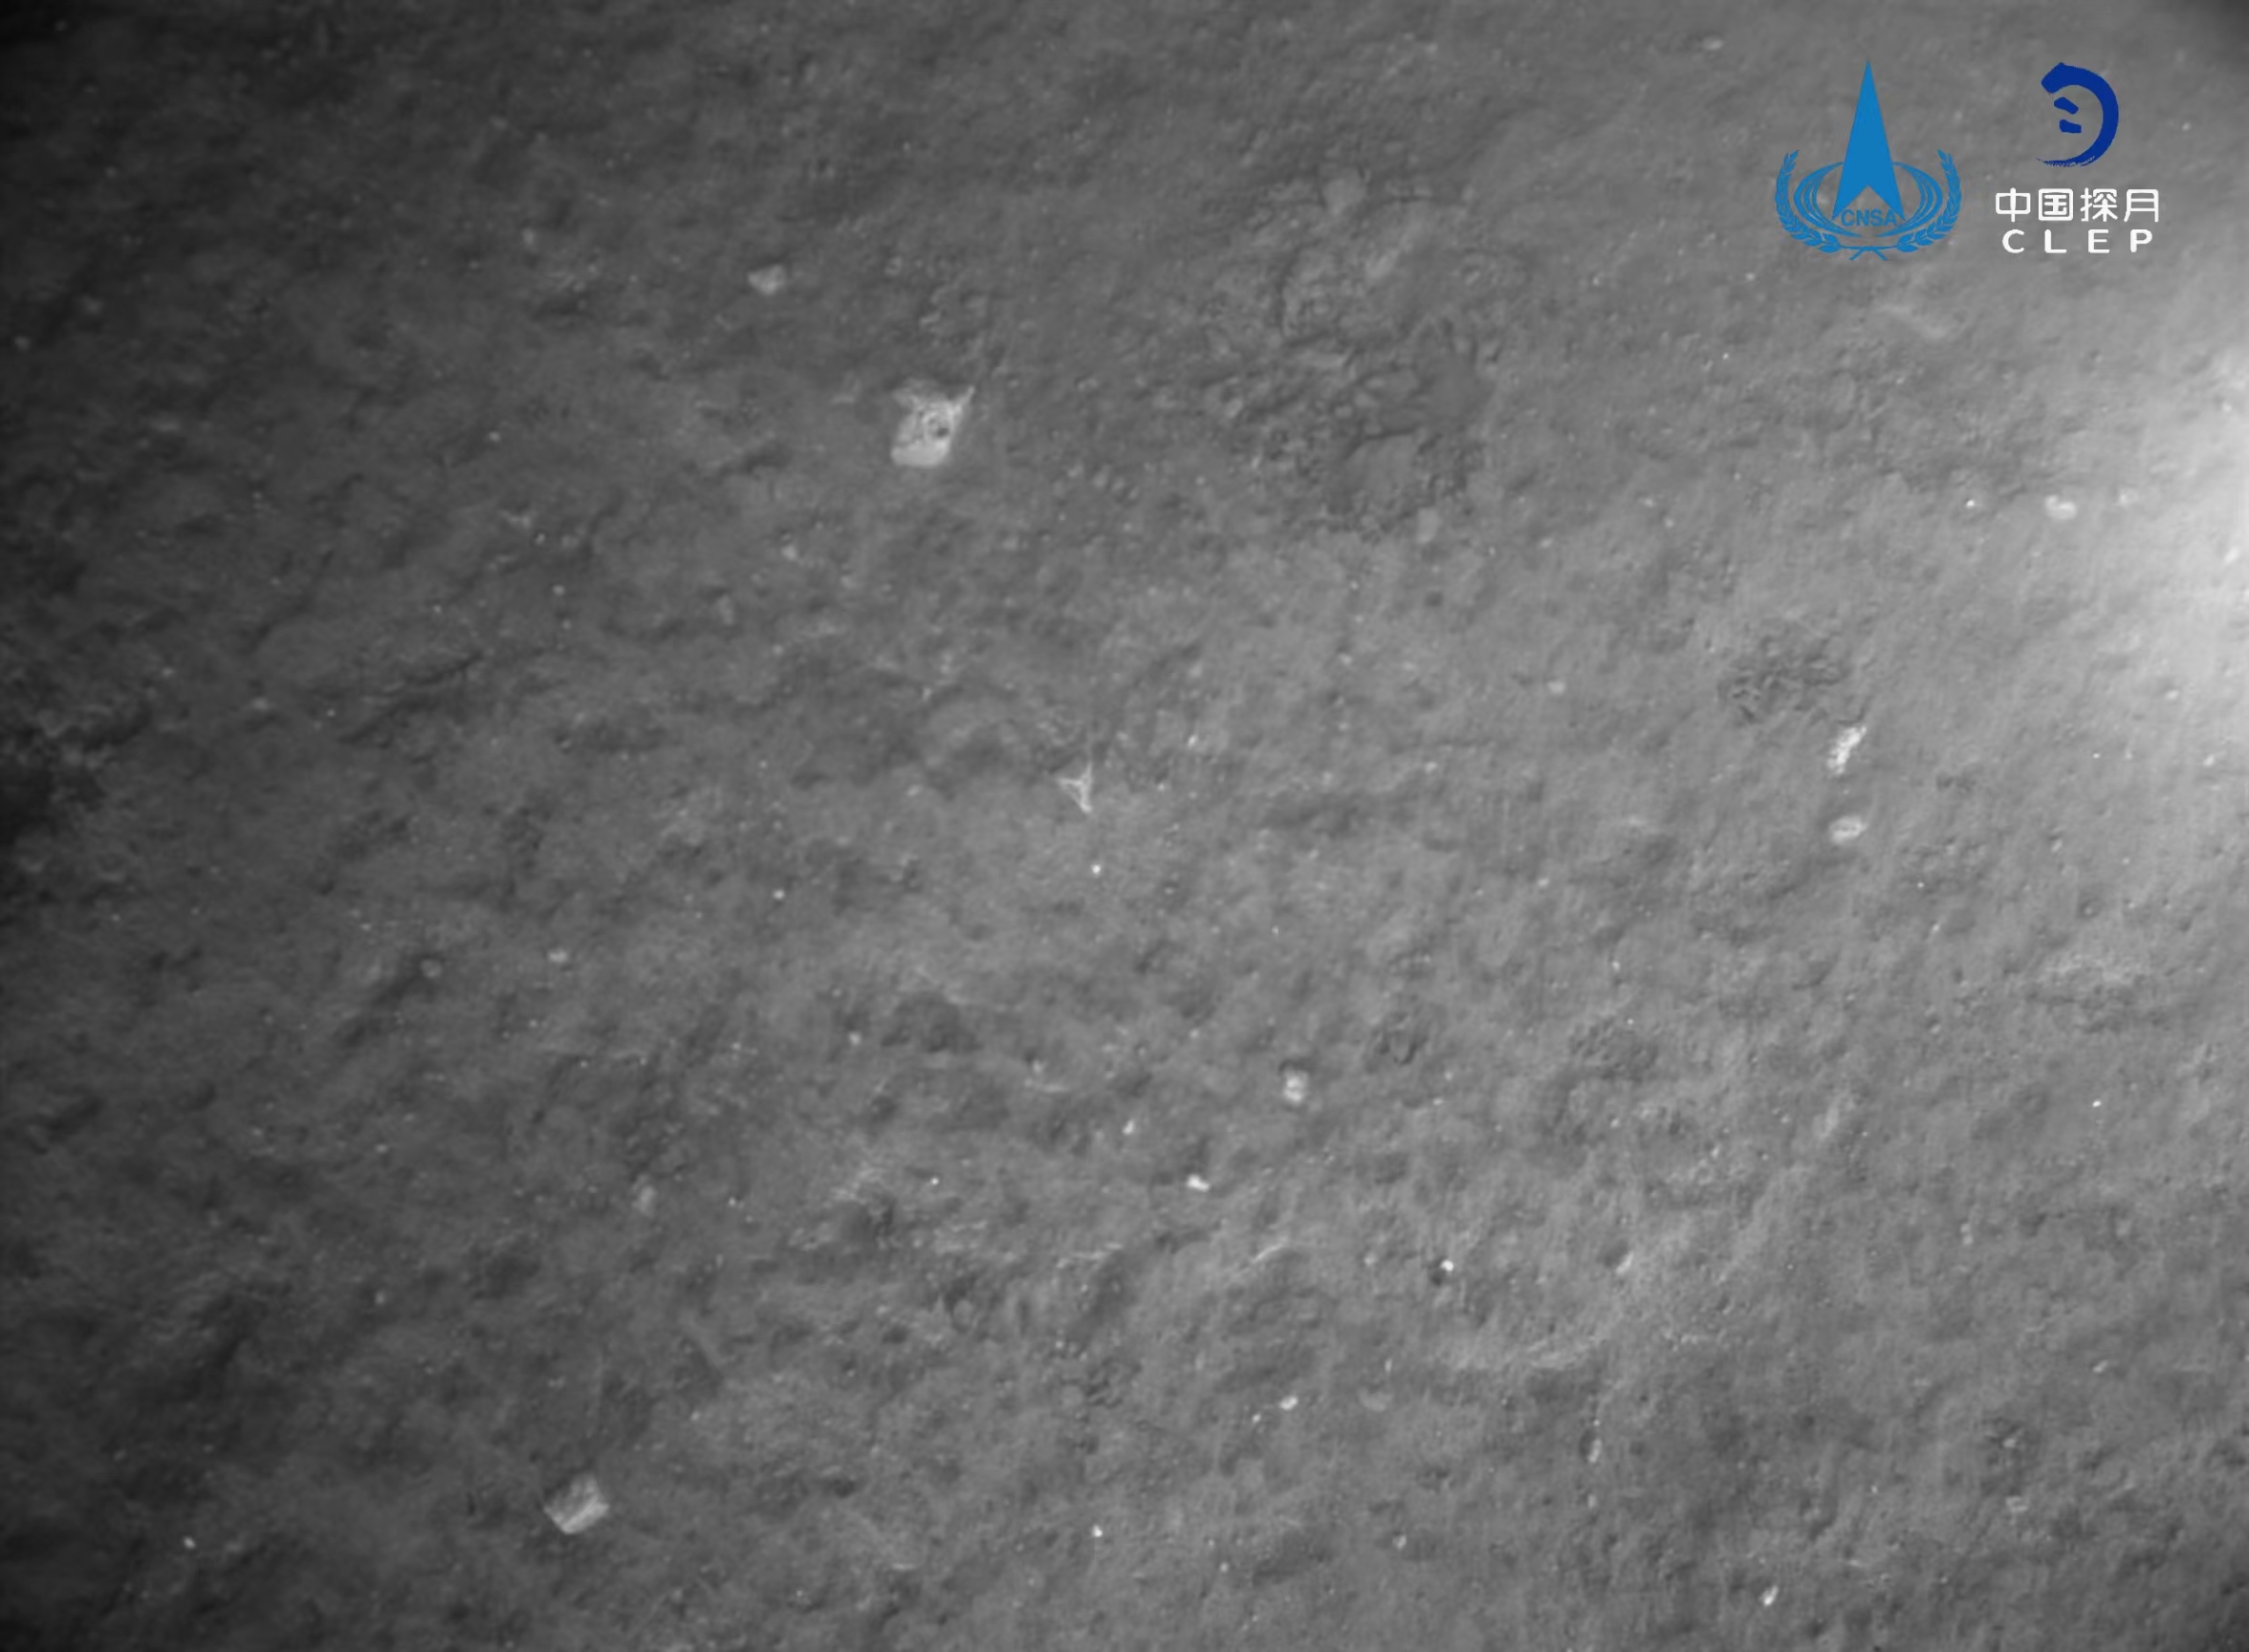 该图由降落相机在着陆器安全着陆后拍摄，图像上方是着陆点北部查菲环形山，图像显示着陆器底部相对平坦，